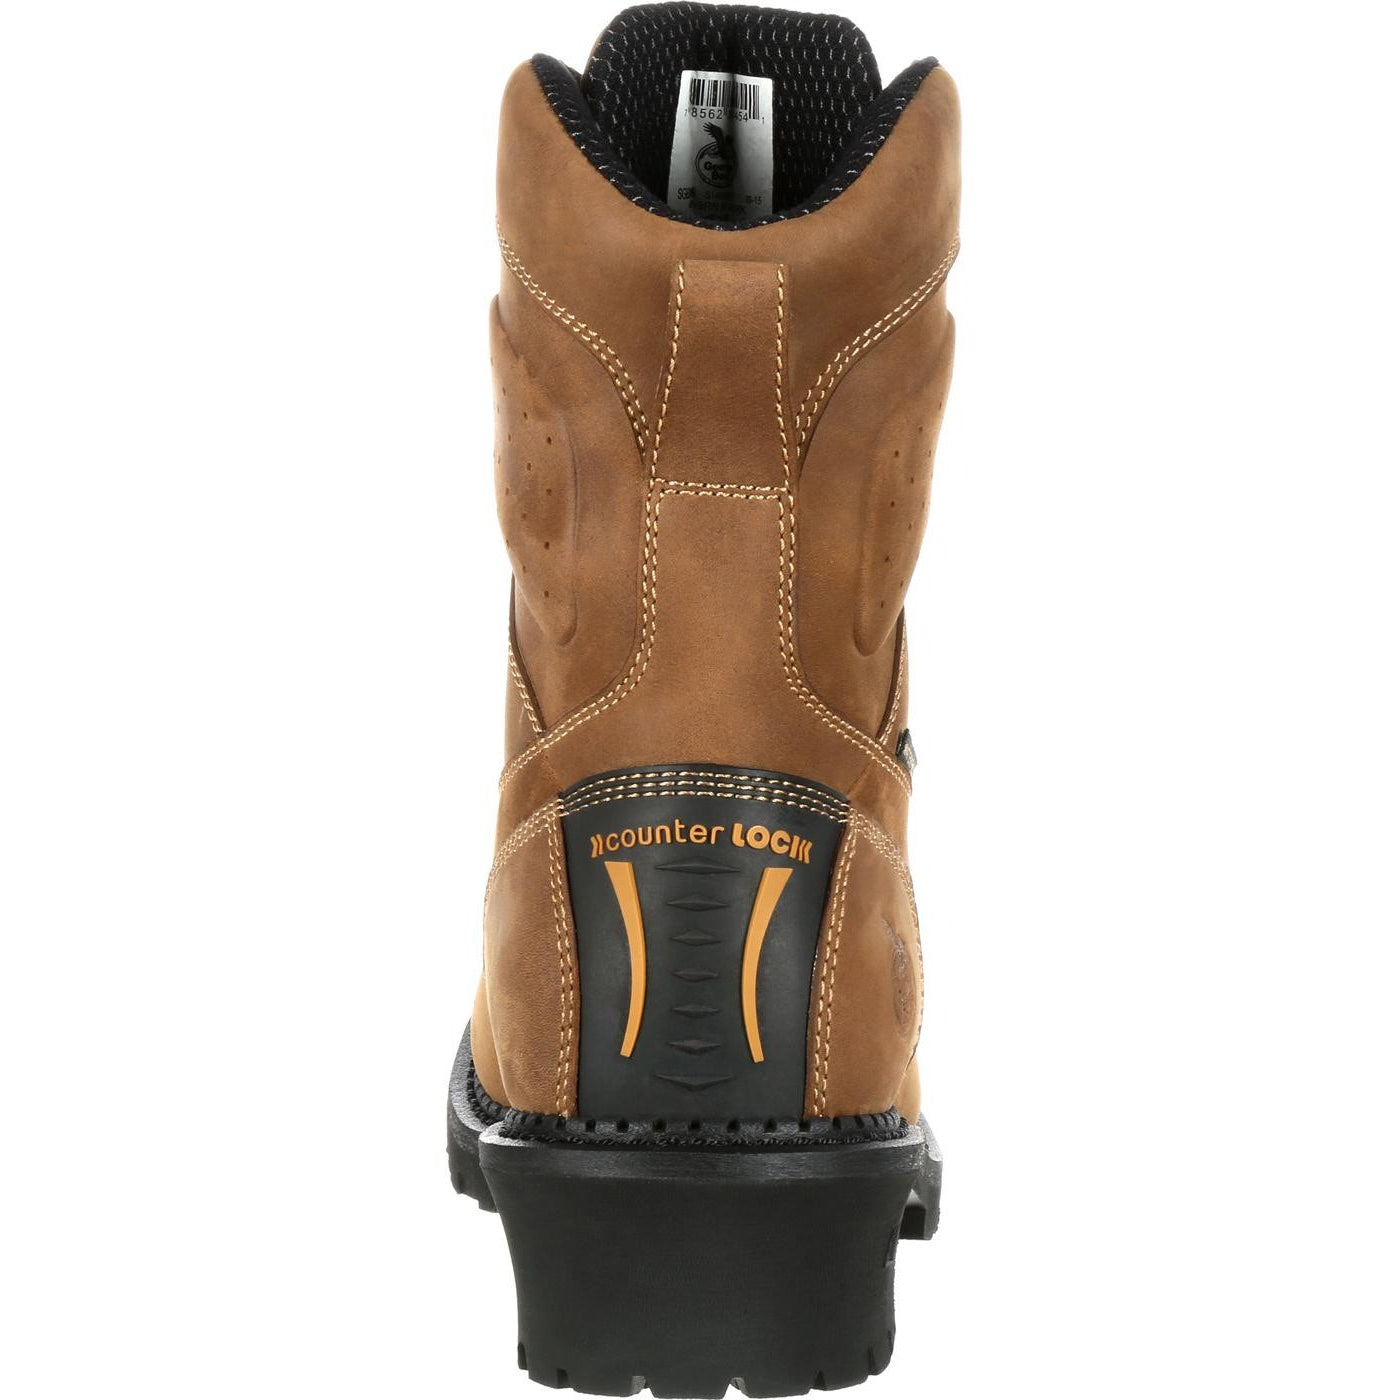 Men's Georgia Boots Comfort Core Logger Composite Toe Waterproof Work Boots Brown - yeehawcowboy